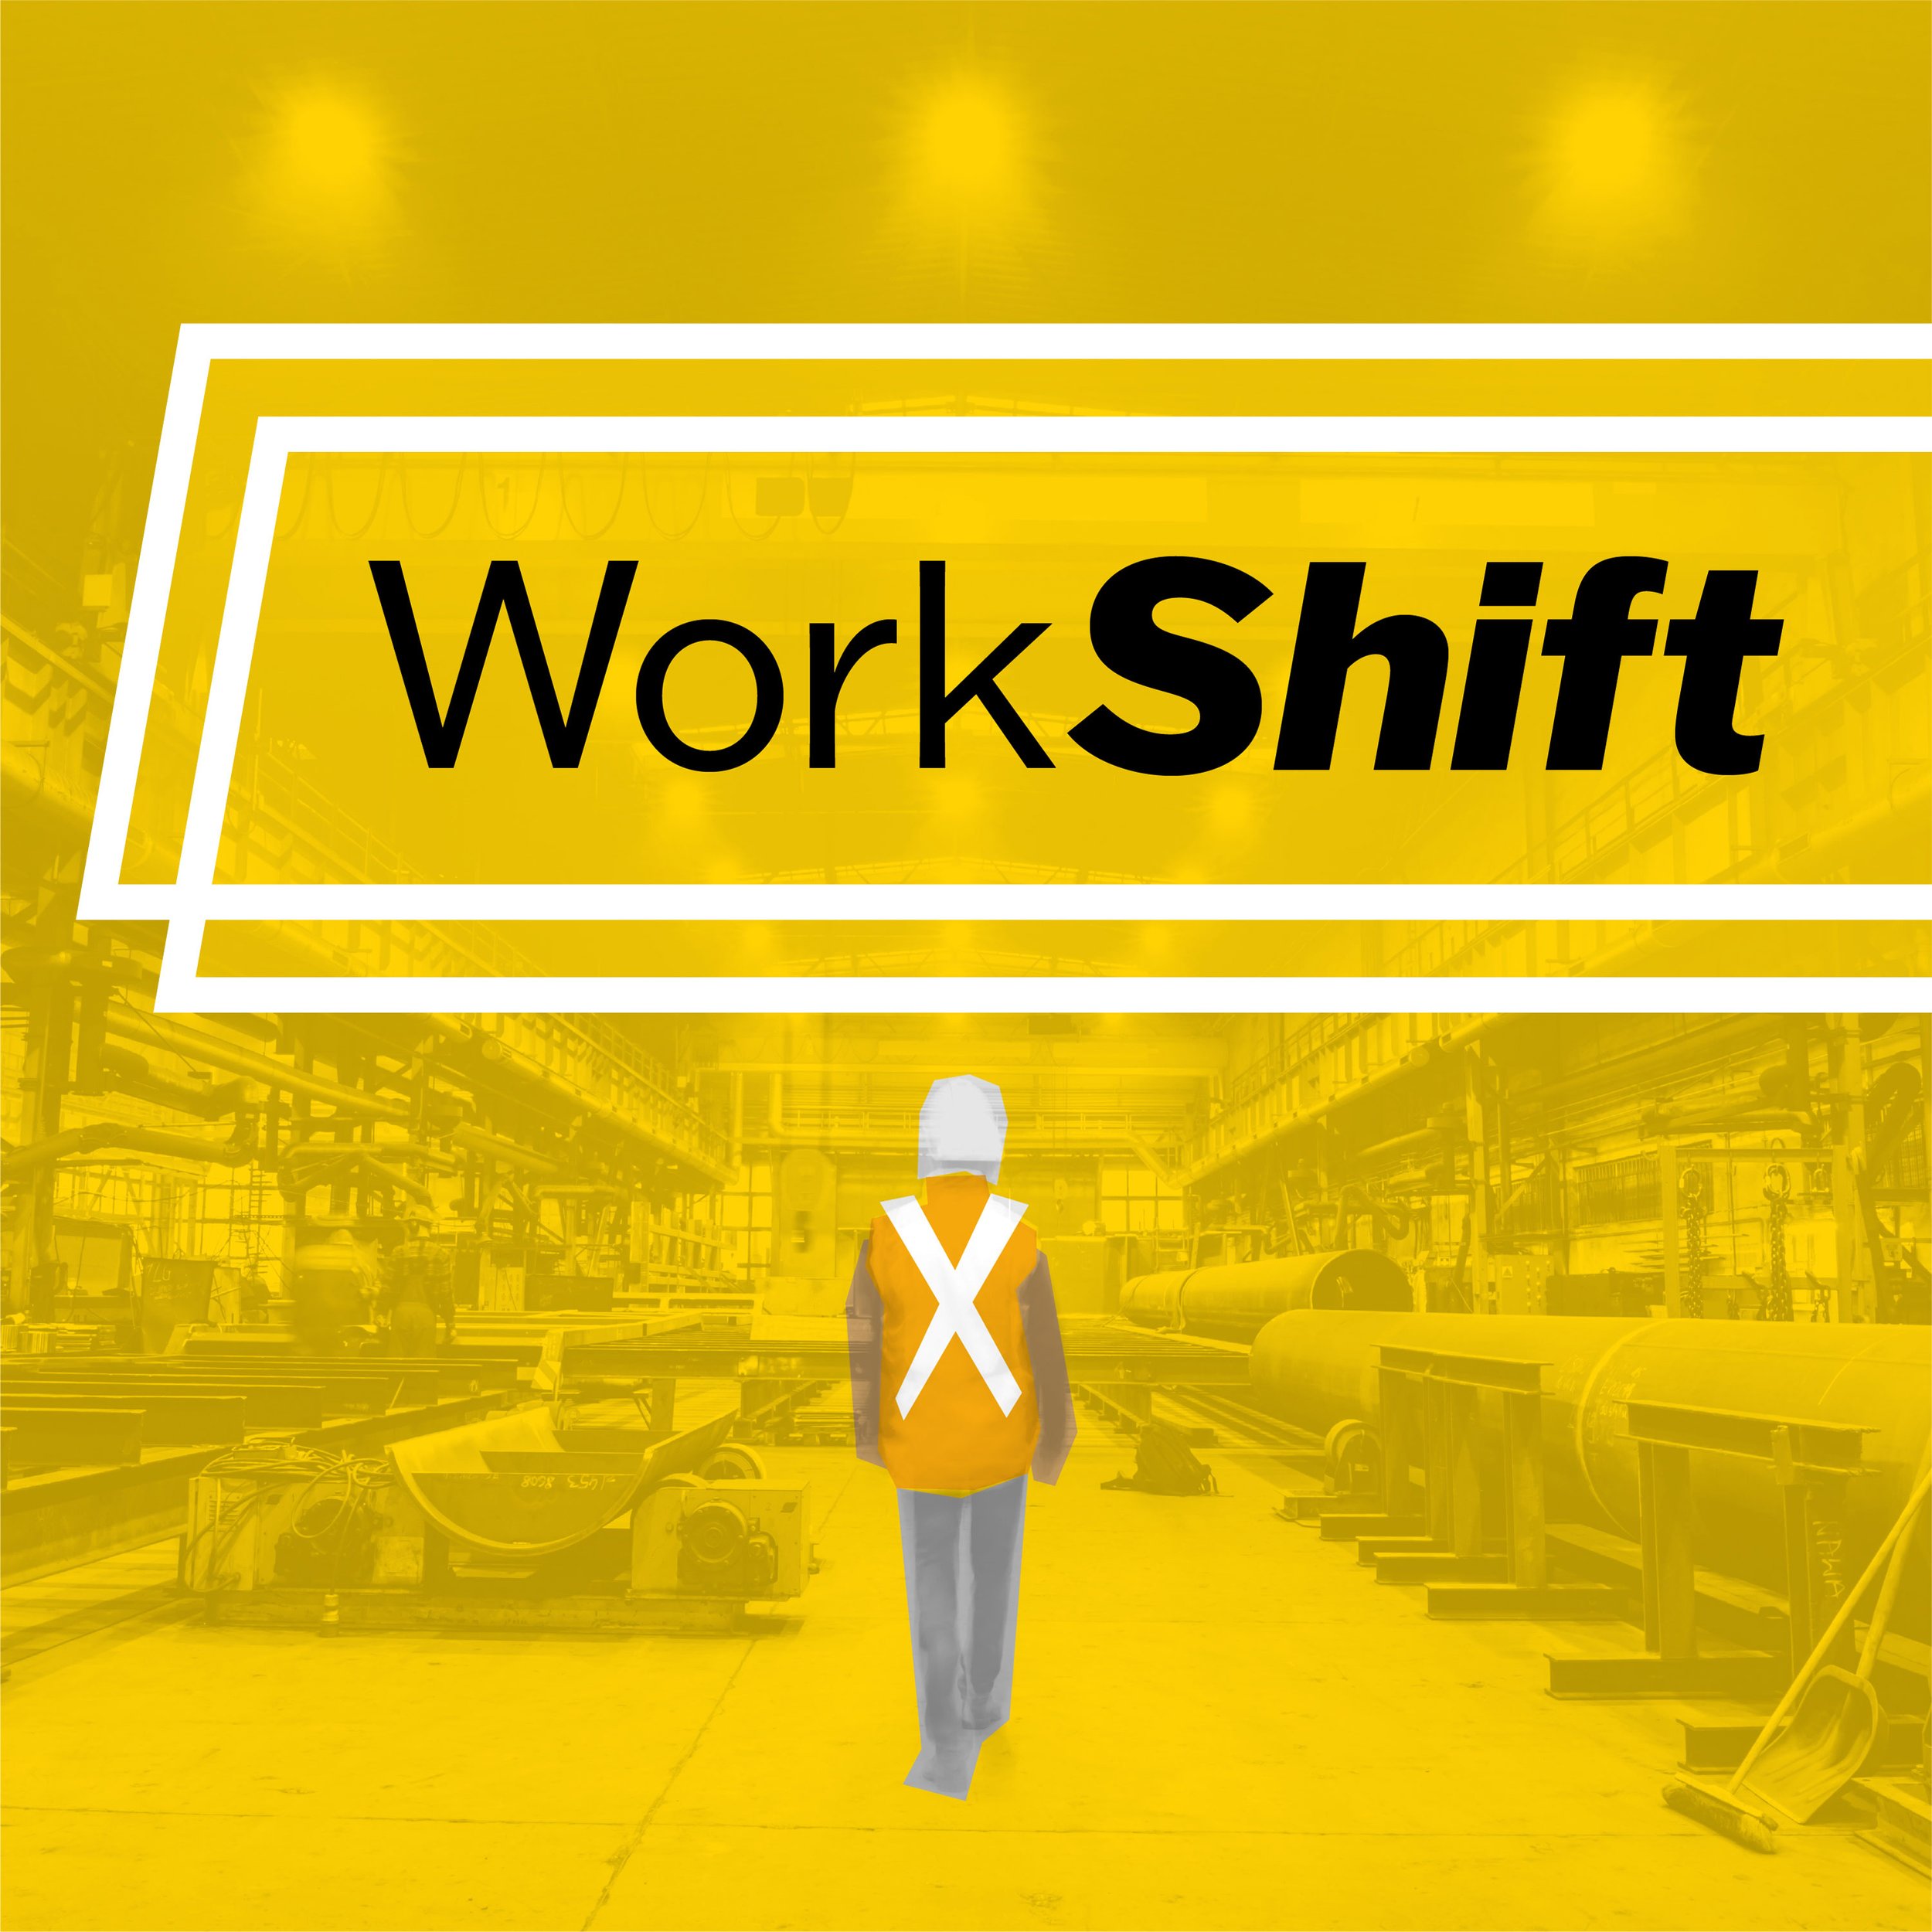 WorkShift-2.jpg